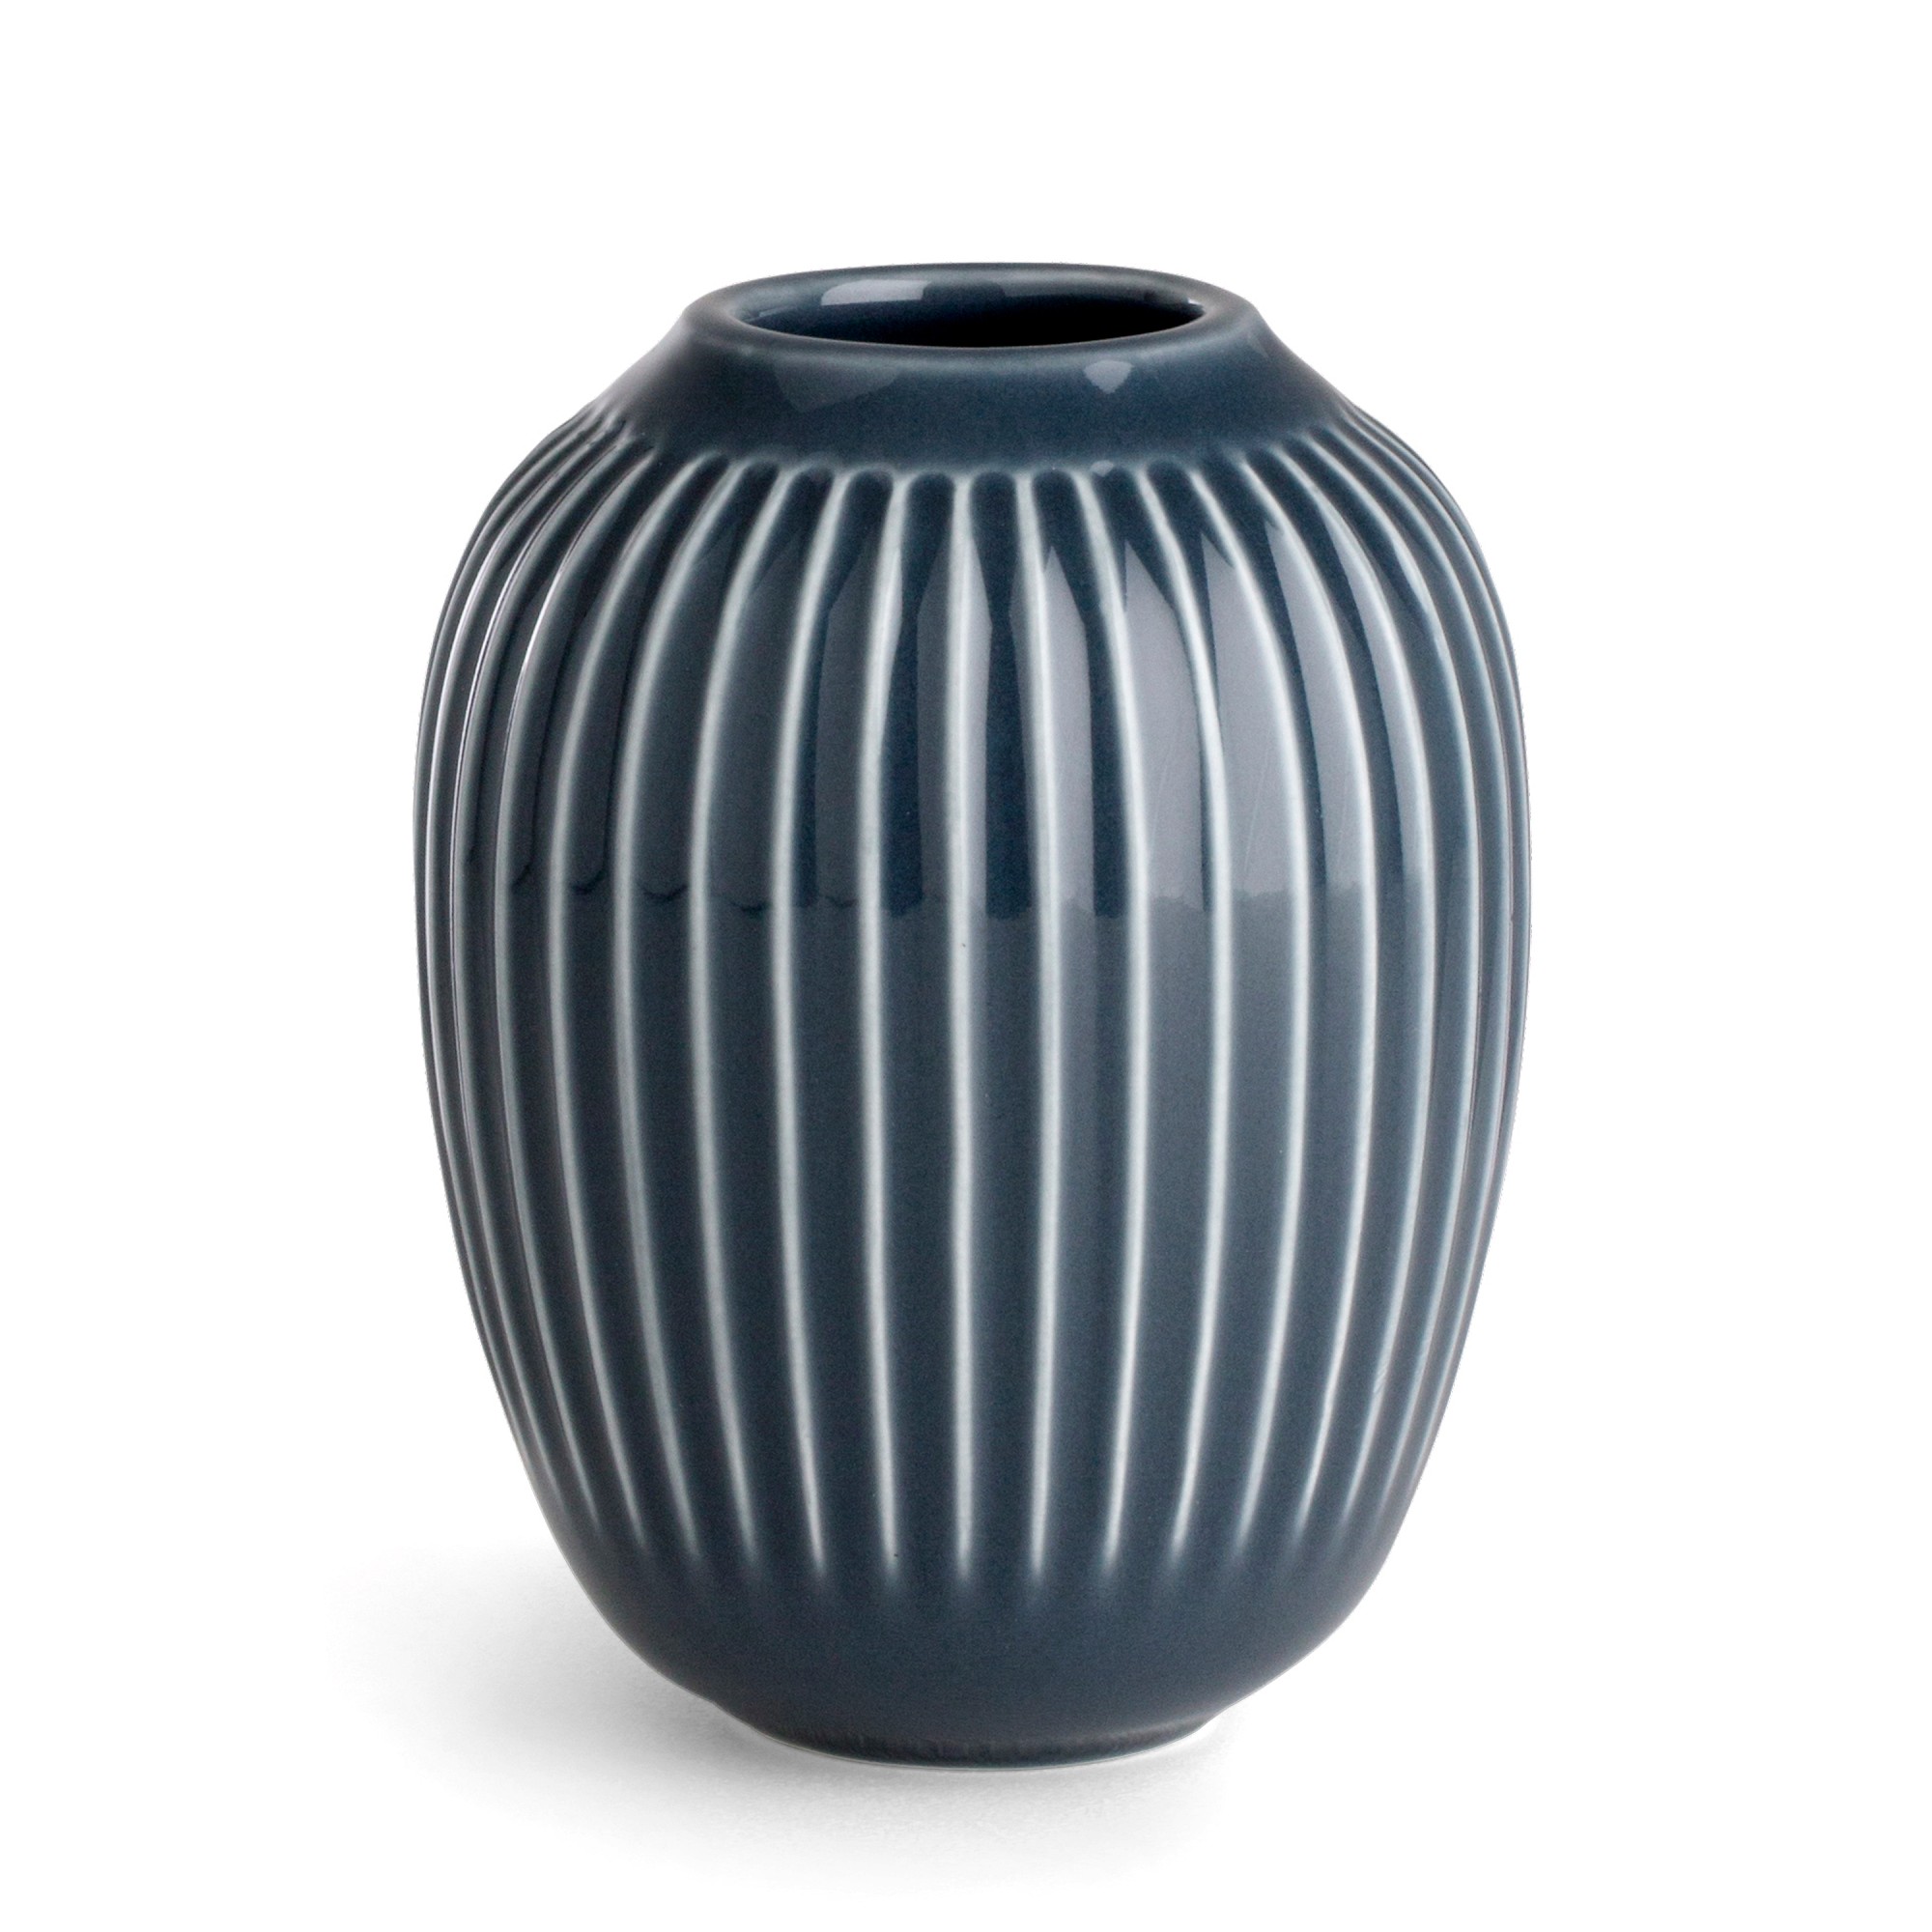 Hammershoi Porcelain Vase, 4.1"